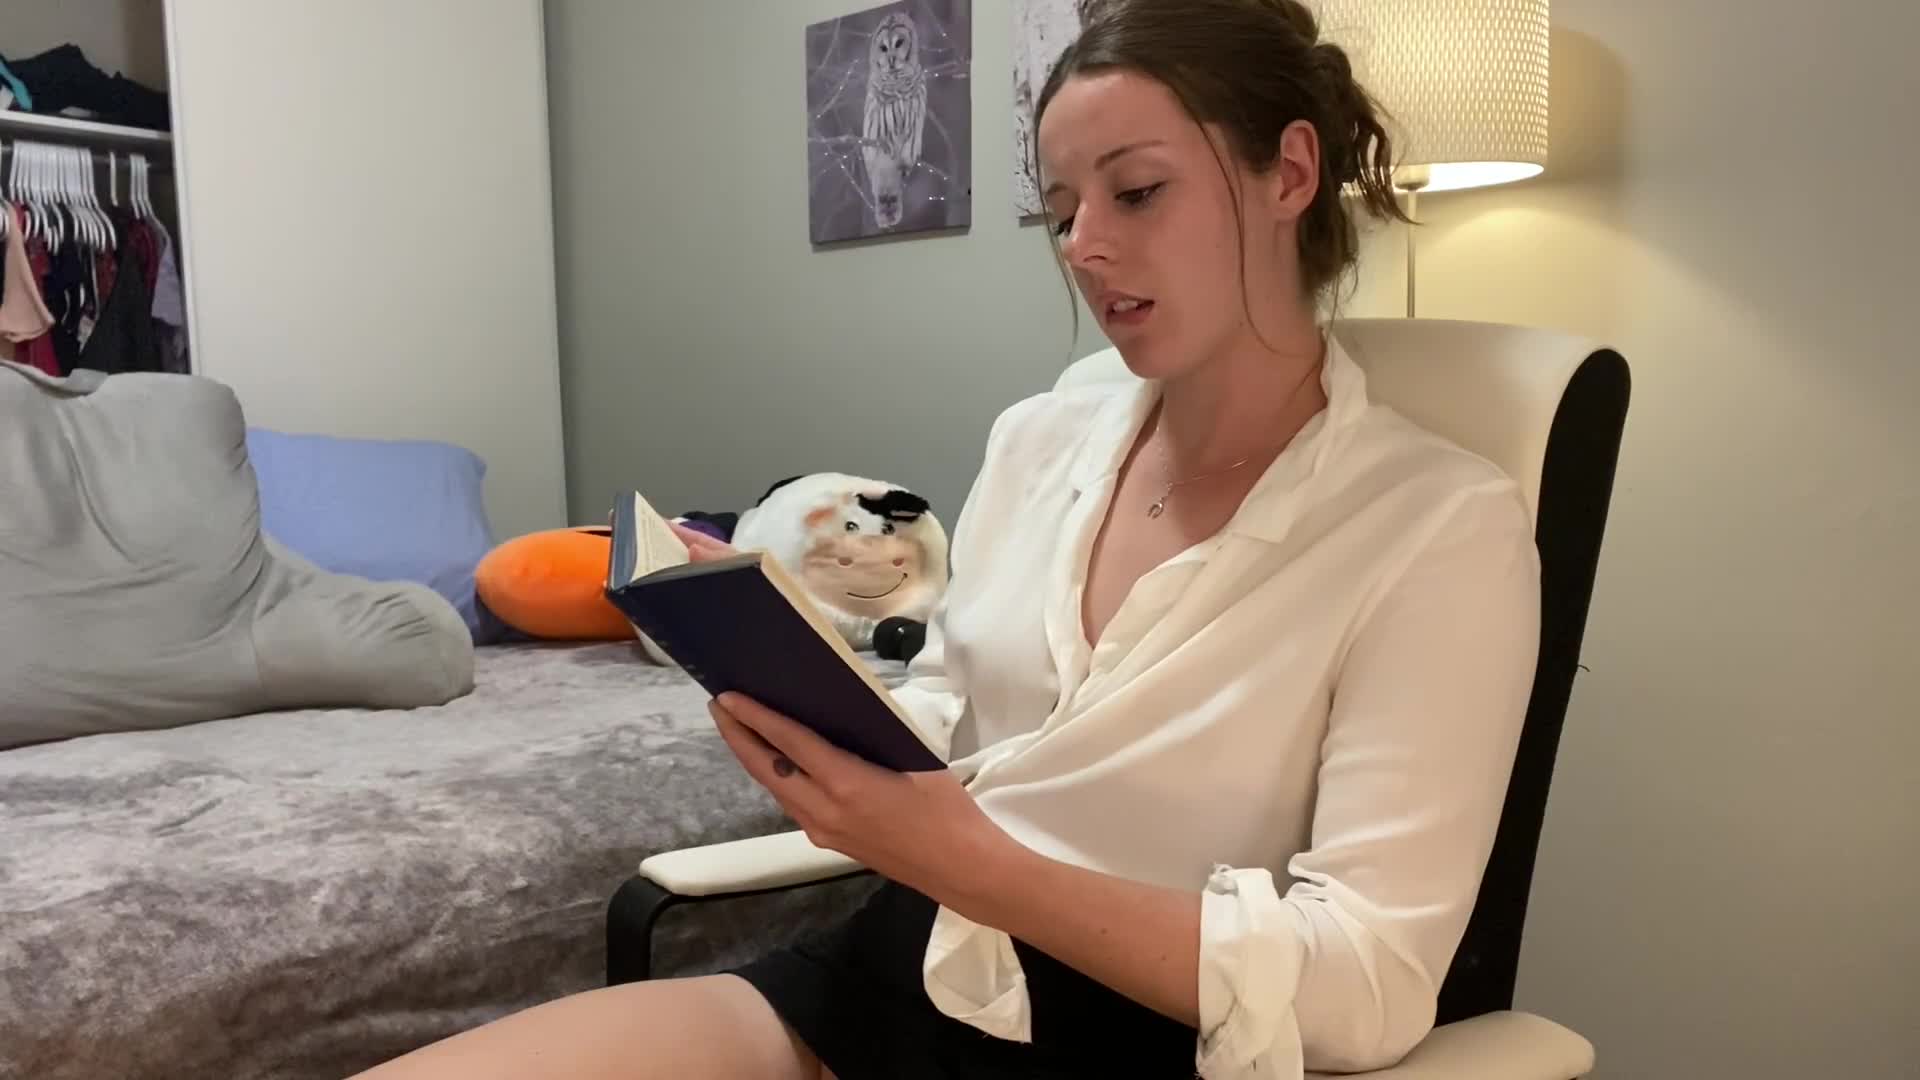 Siro teini masturboi lukiessaan romaania - Videos kuva kuva